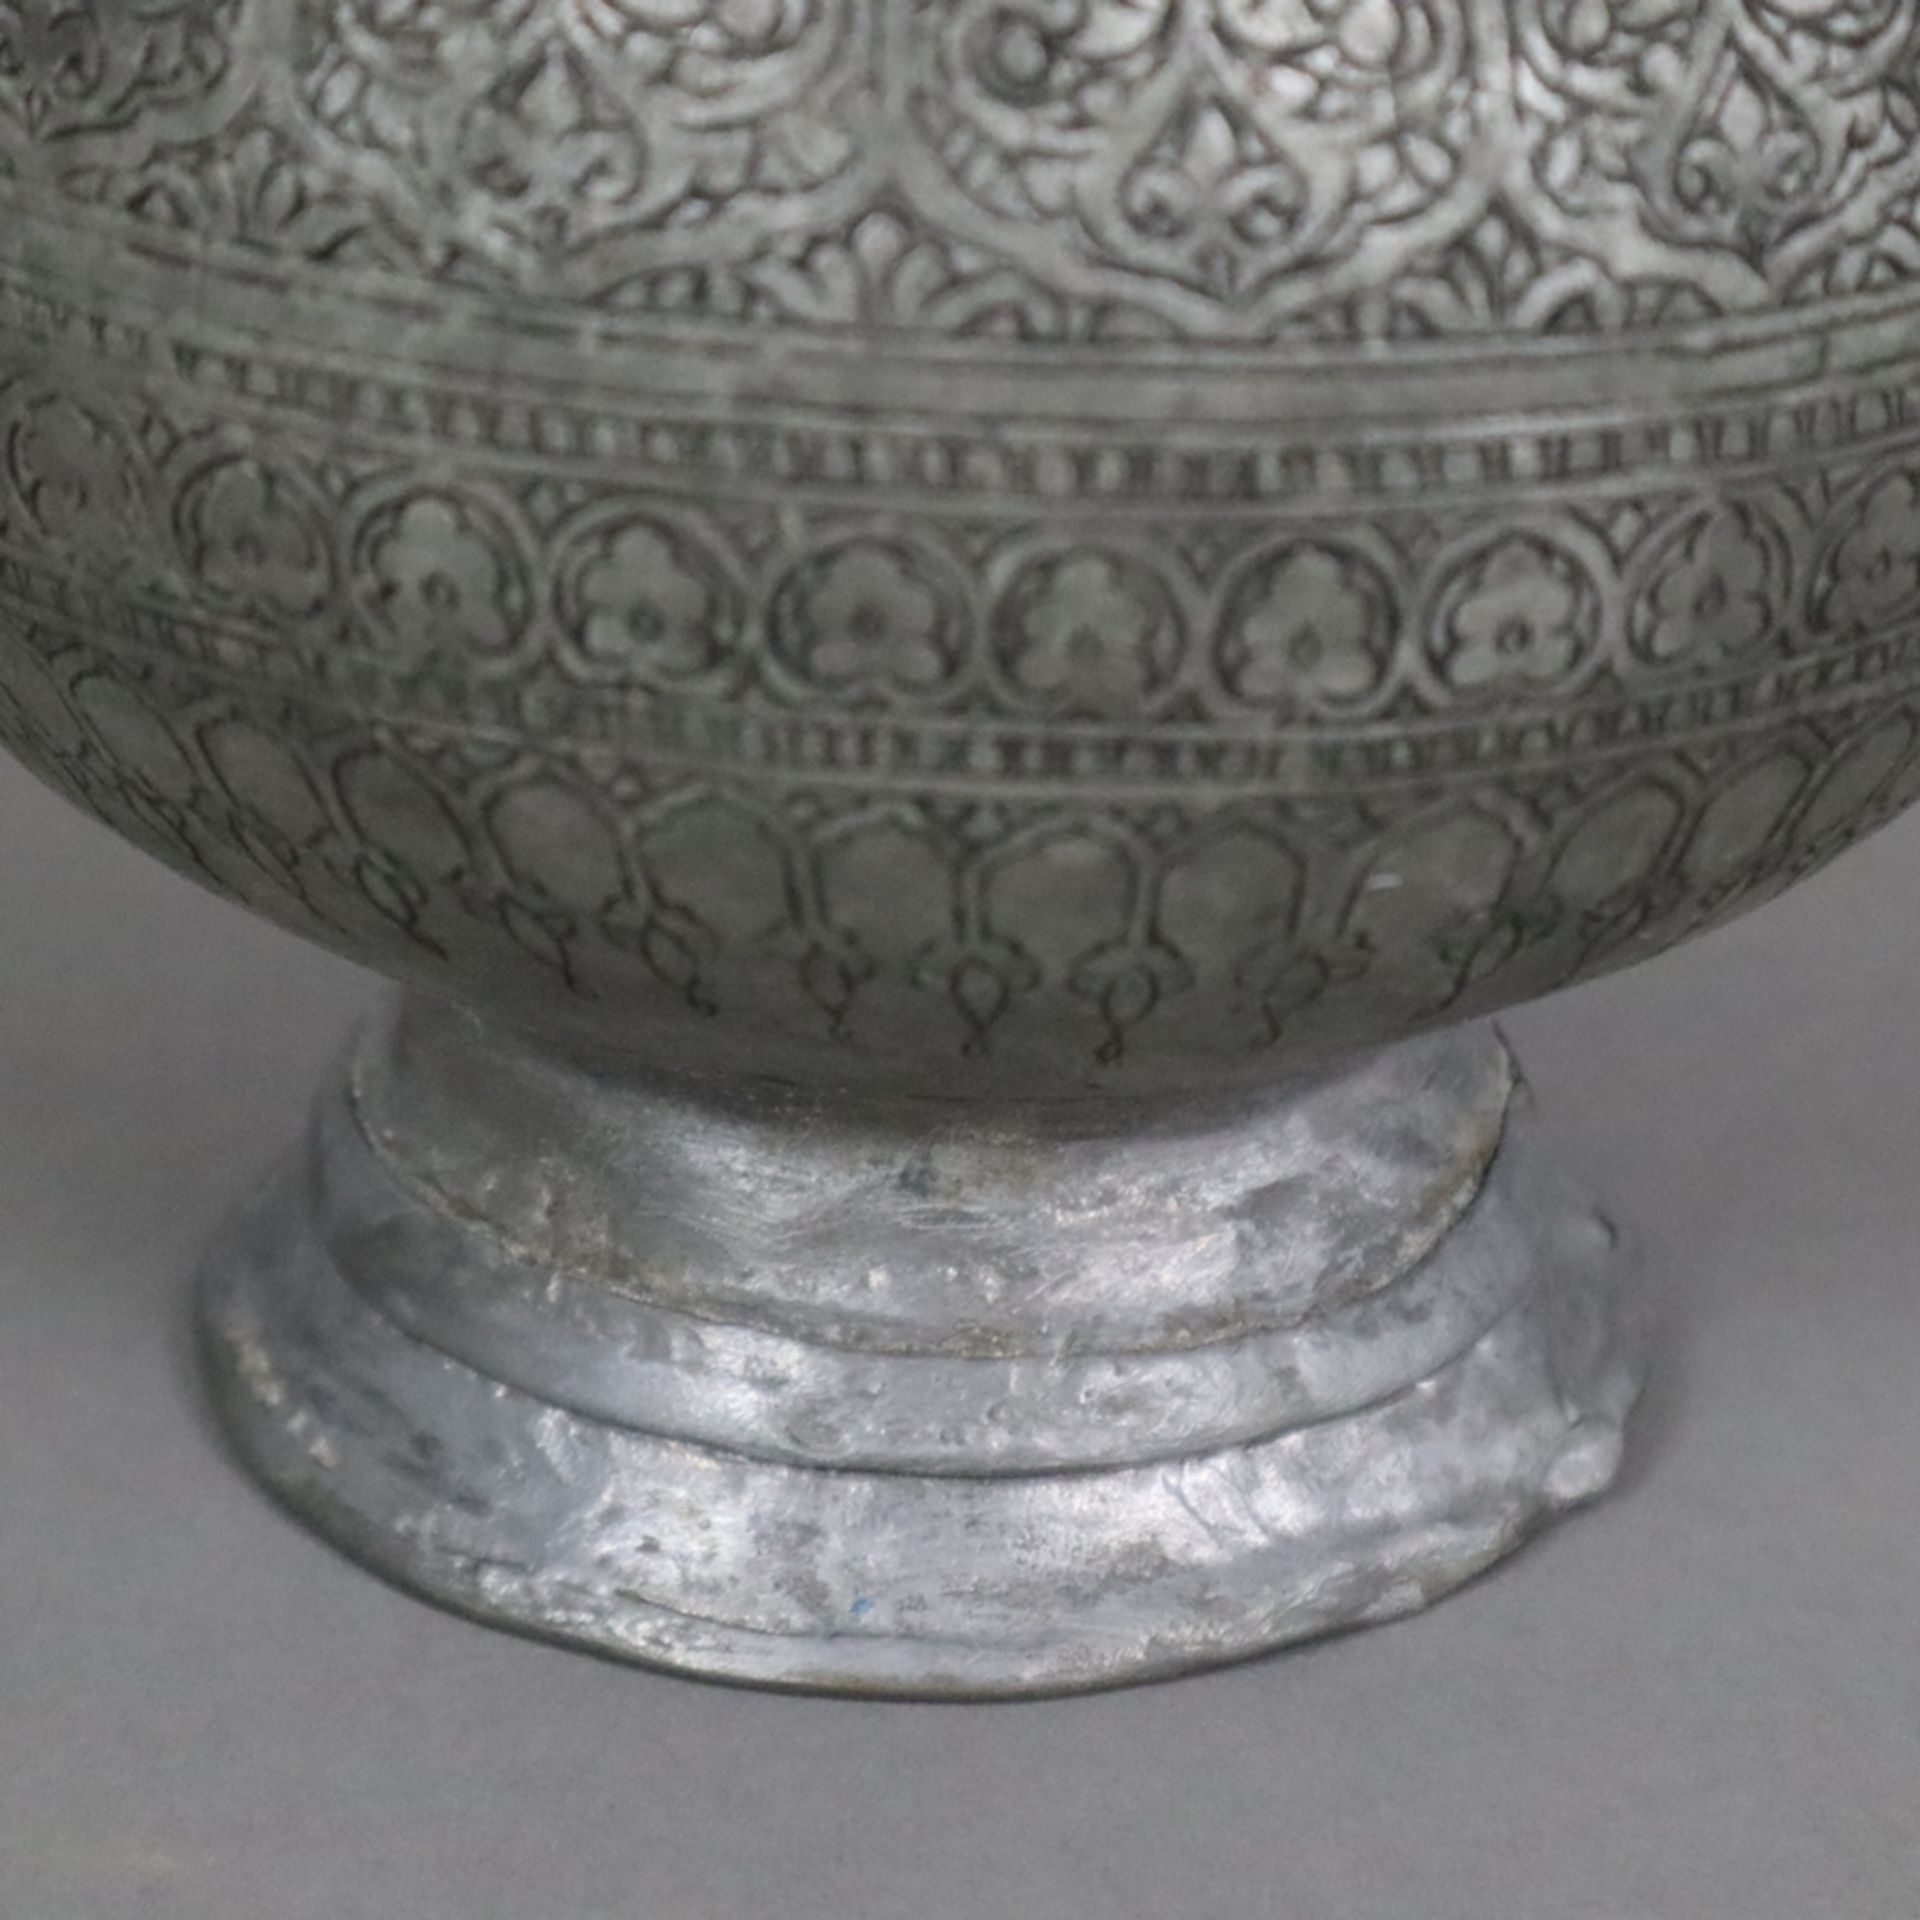 Vase - indopersisch, Kupfer versilbert / verzinnt?, birnförmige Vasenform am Hals durch Ringe gegli - Bild 8 aus 9